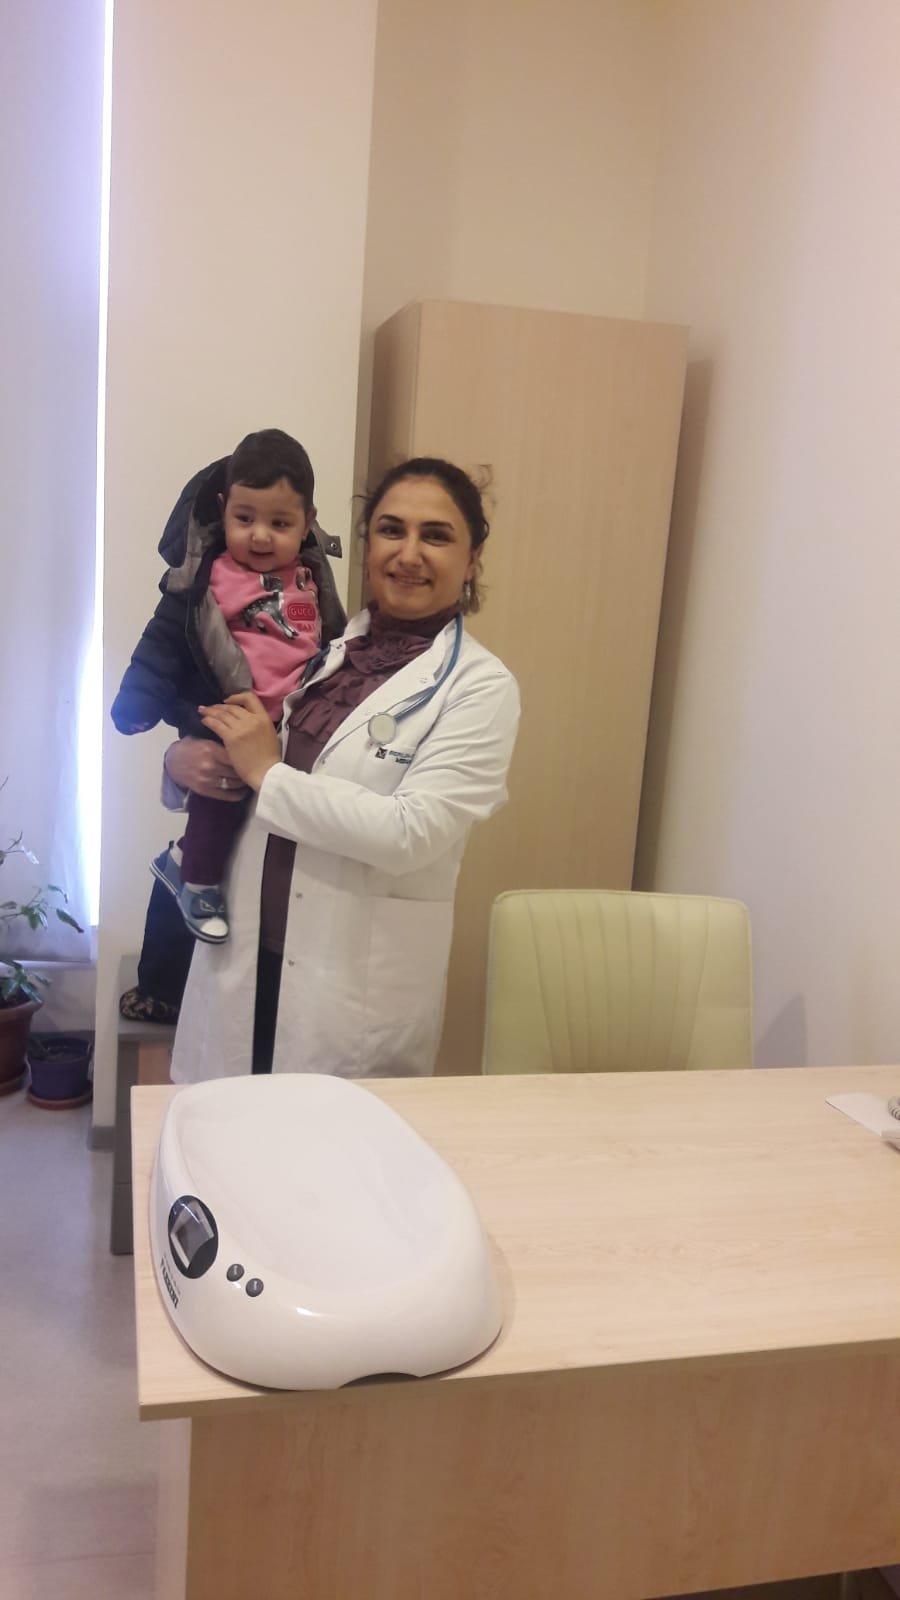 Həkim-pediatr Təravət Həsənova: "Hər bir uşağa öz övladım kimi yanaşıram"